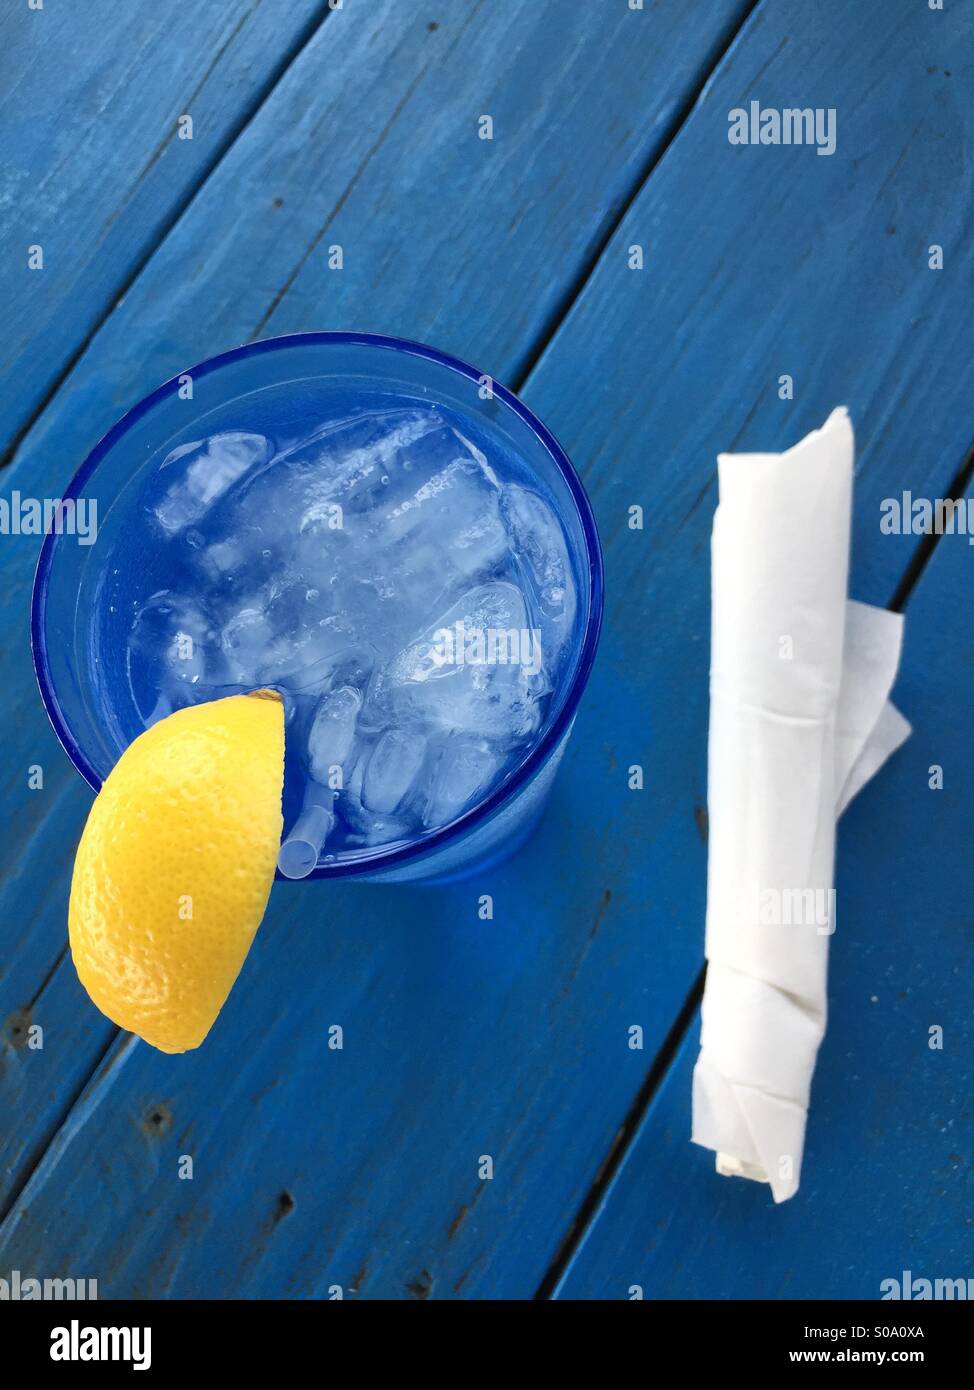 Longdrinkglas mit Eiswasser mit Zitrone und Stroh und eine Serviette, auf einem blauen Holztisch Stockfoto